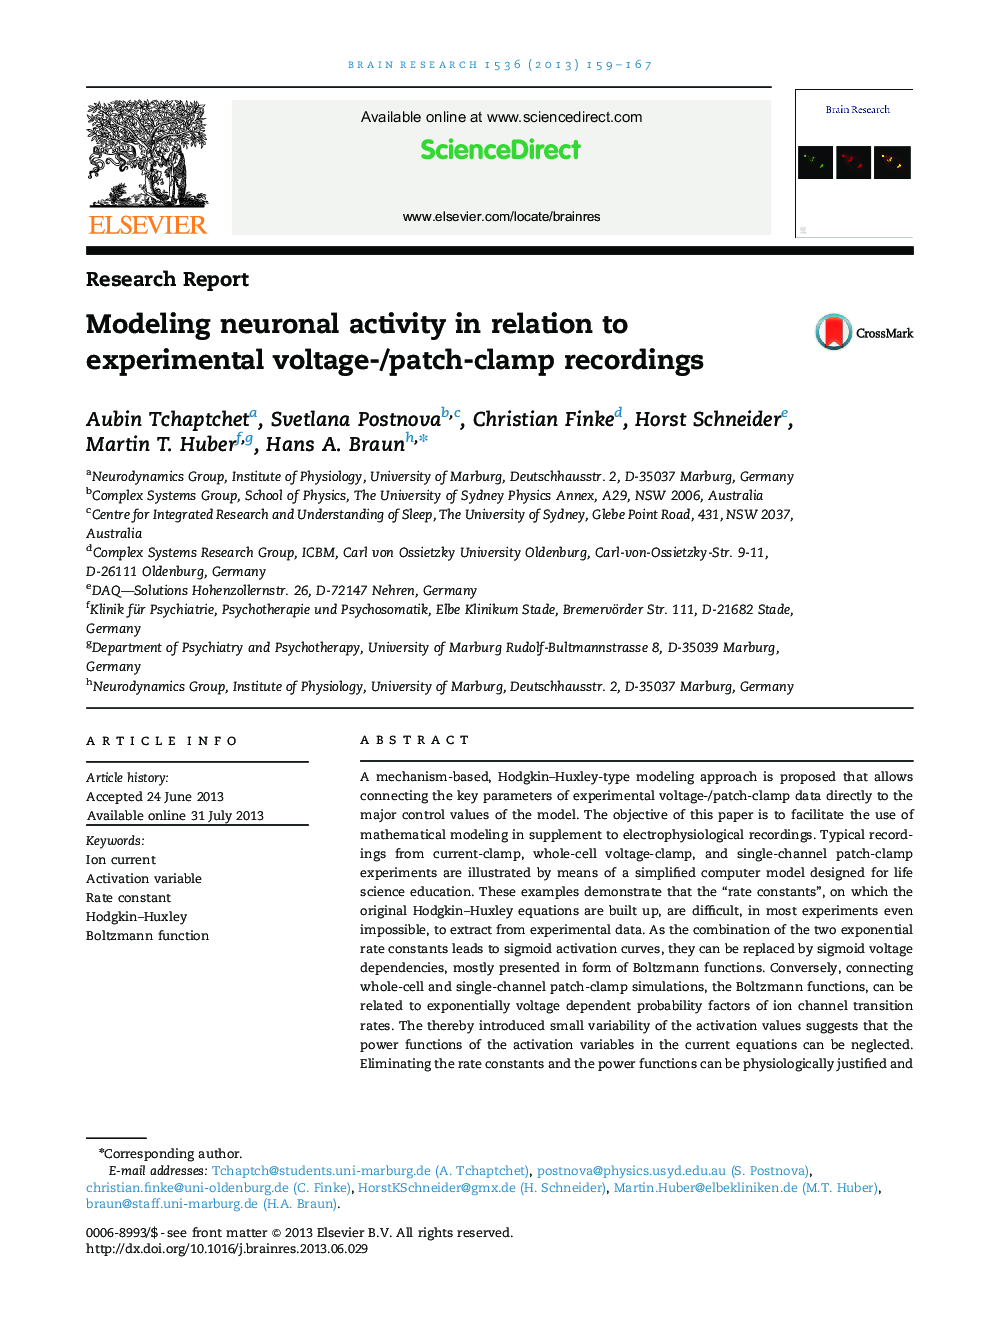 گزارش تحقیق: مدلسازی فعالیت های عصبی در رابطه با ضبط آزمایش ولتاژ / پچ-گیره 